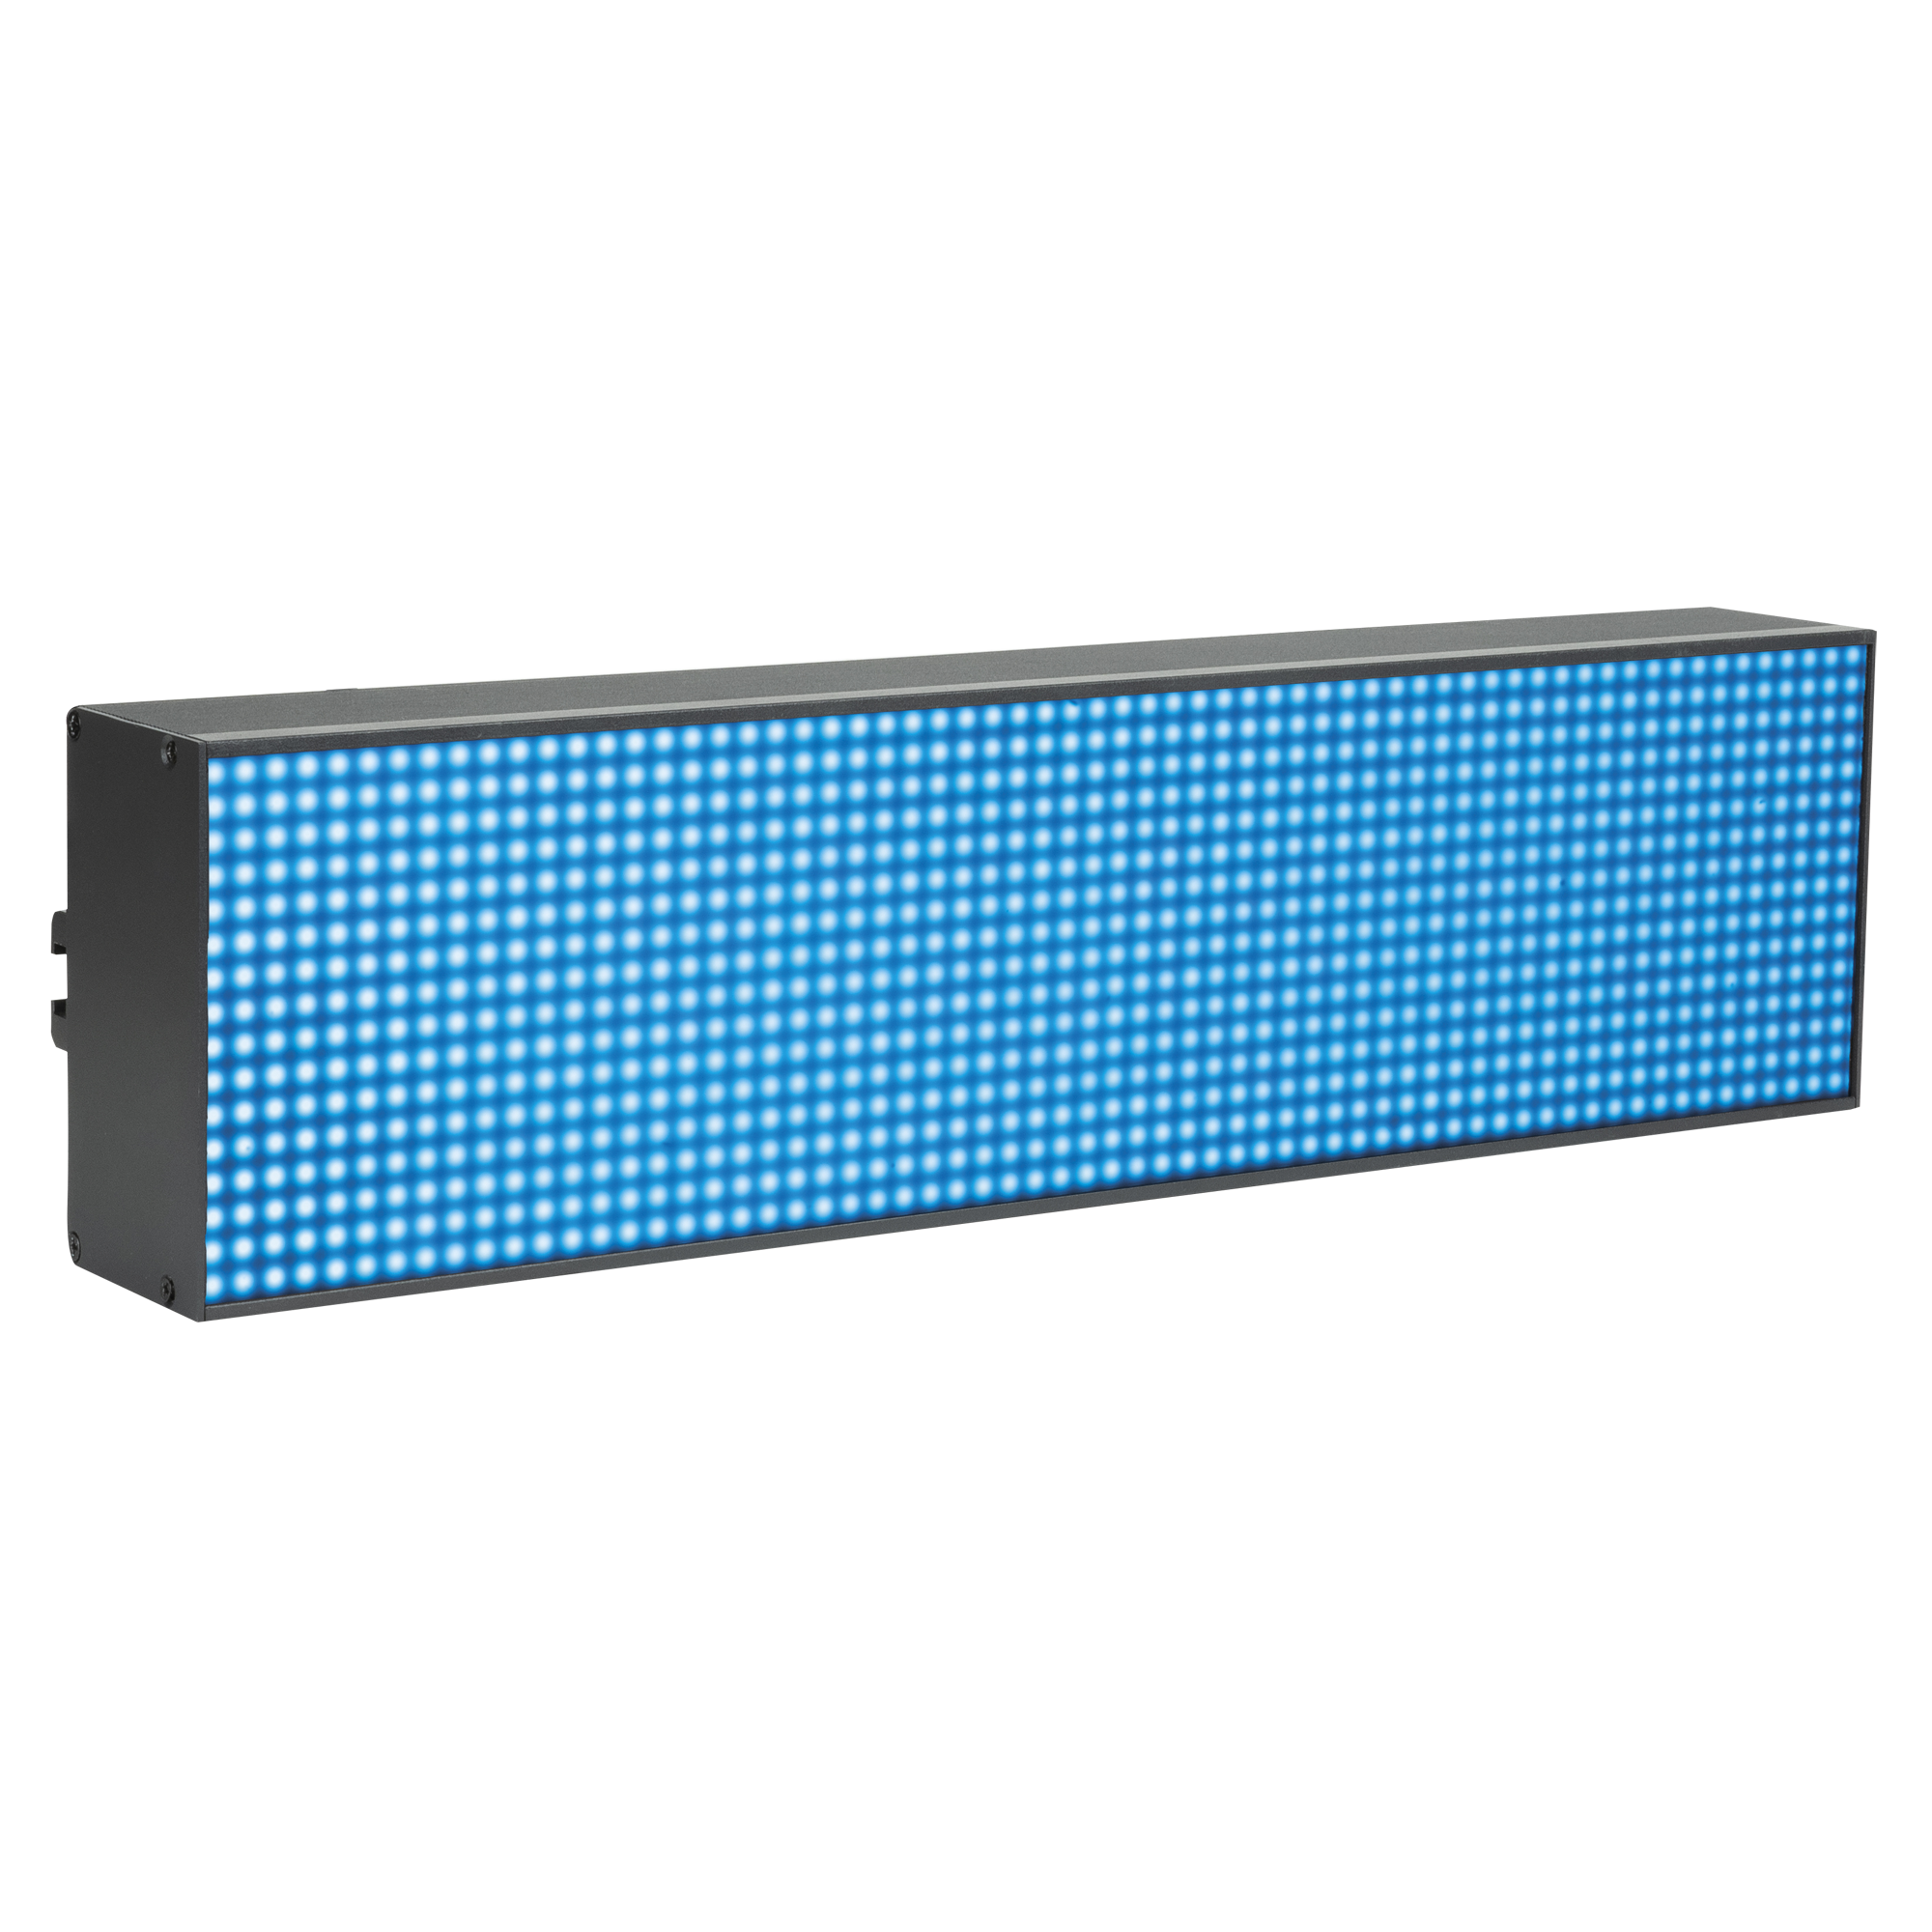 Pixel Panel 1024 - Onlinediscowinkel.nl